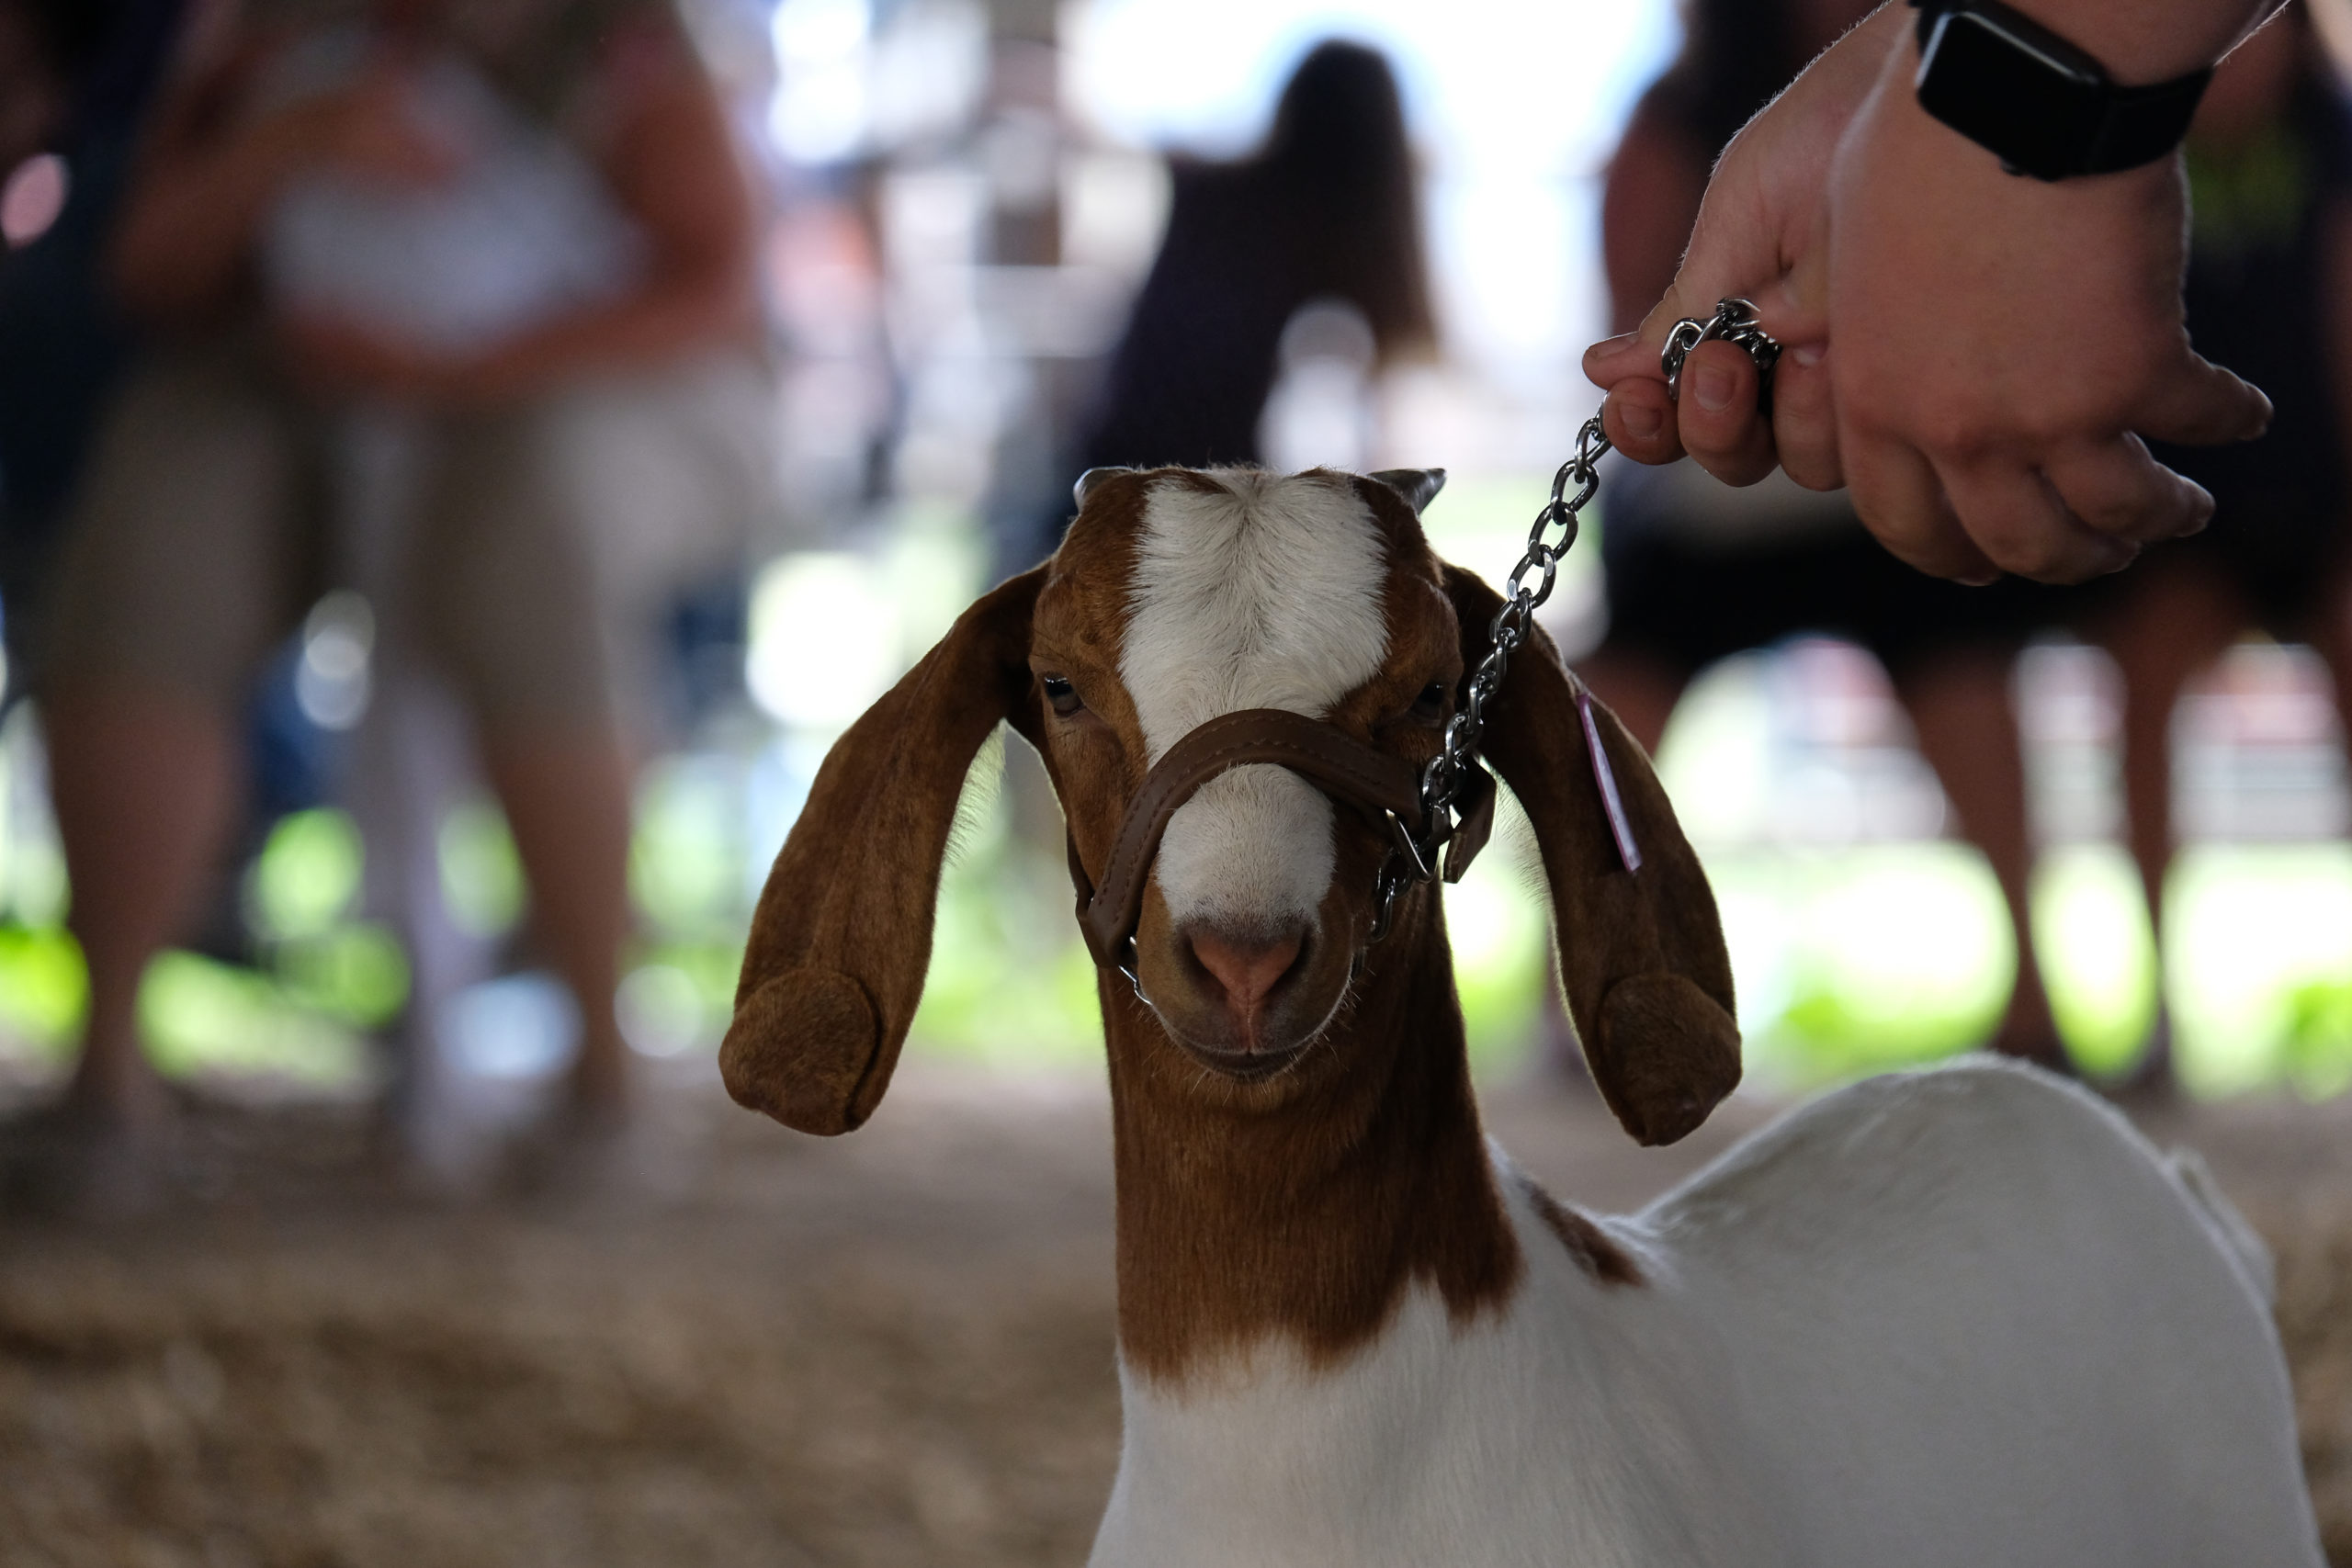 Unique Goat Show At State Fair MidWest Farm Report